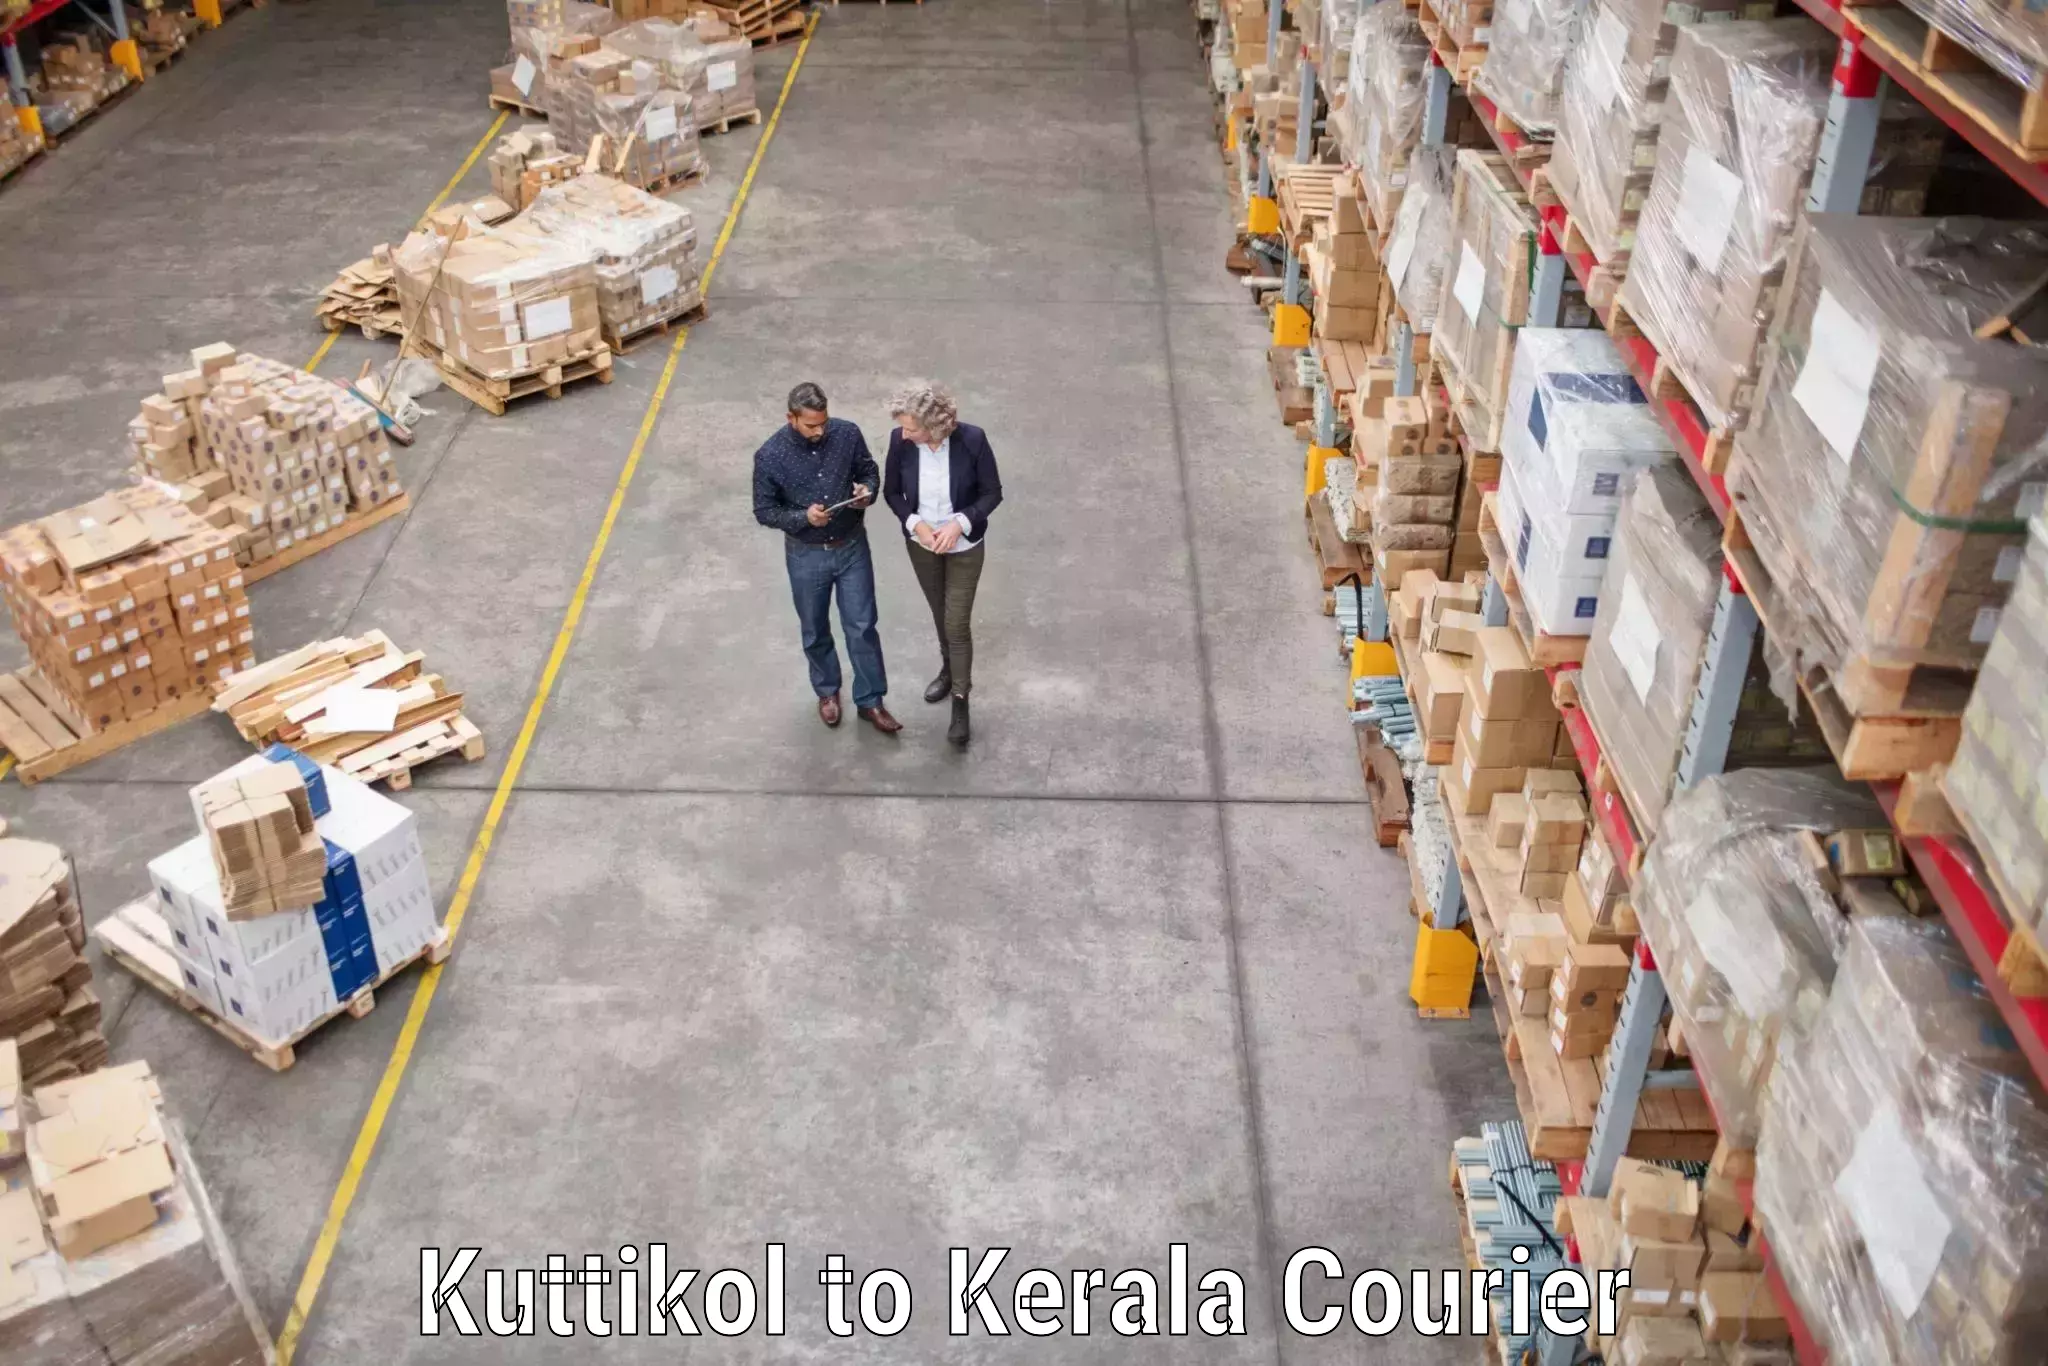 Professional moving company Kuttikol to Kuttiady